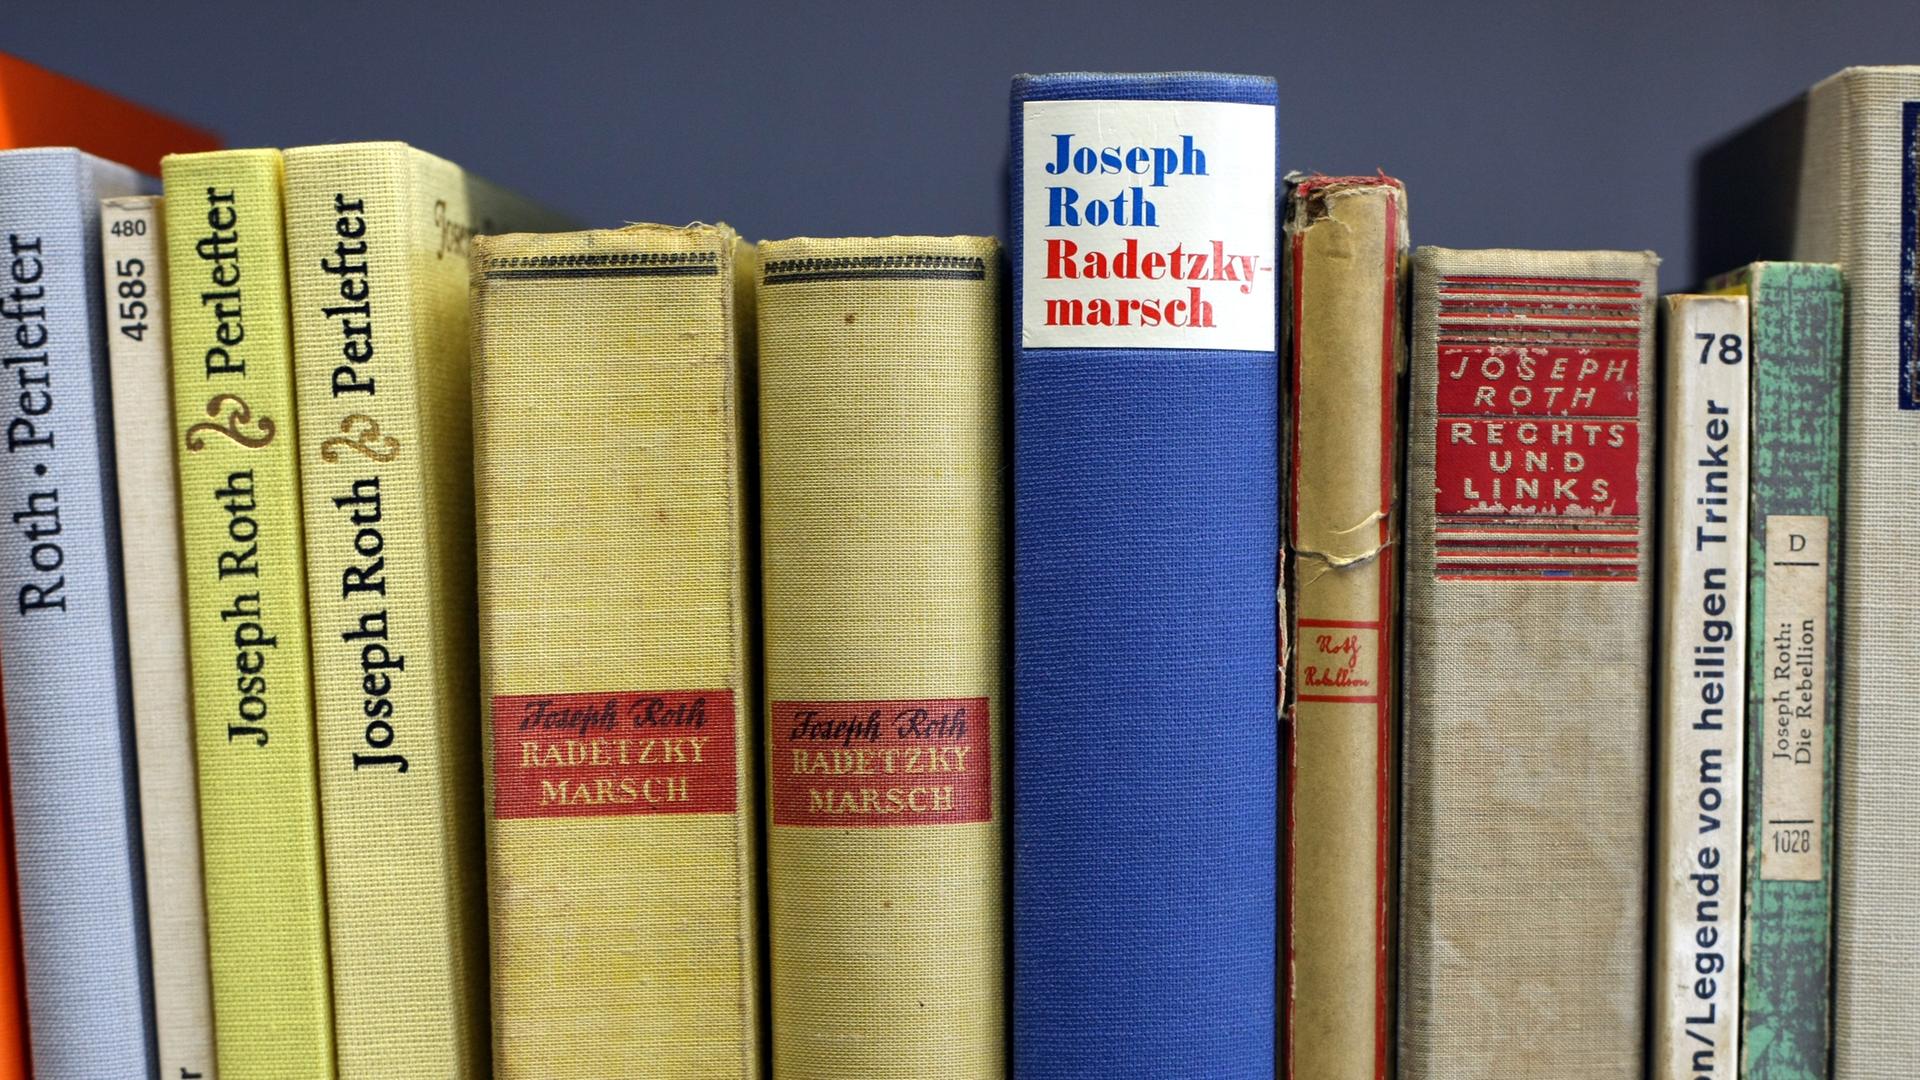 Der Roman "Radetzkymarsch" gilt als einer der berühmtesten von Joseph Roth.